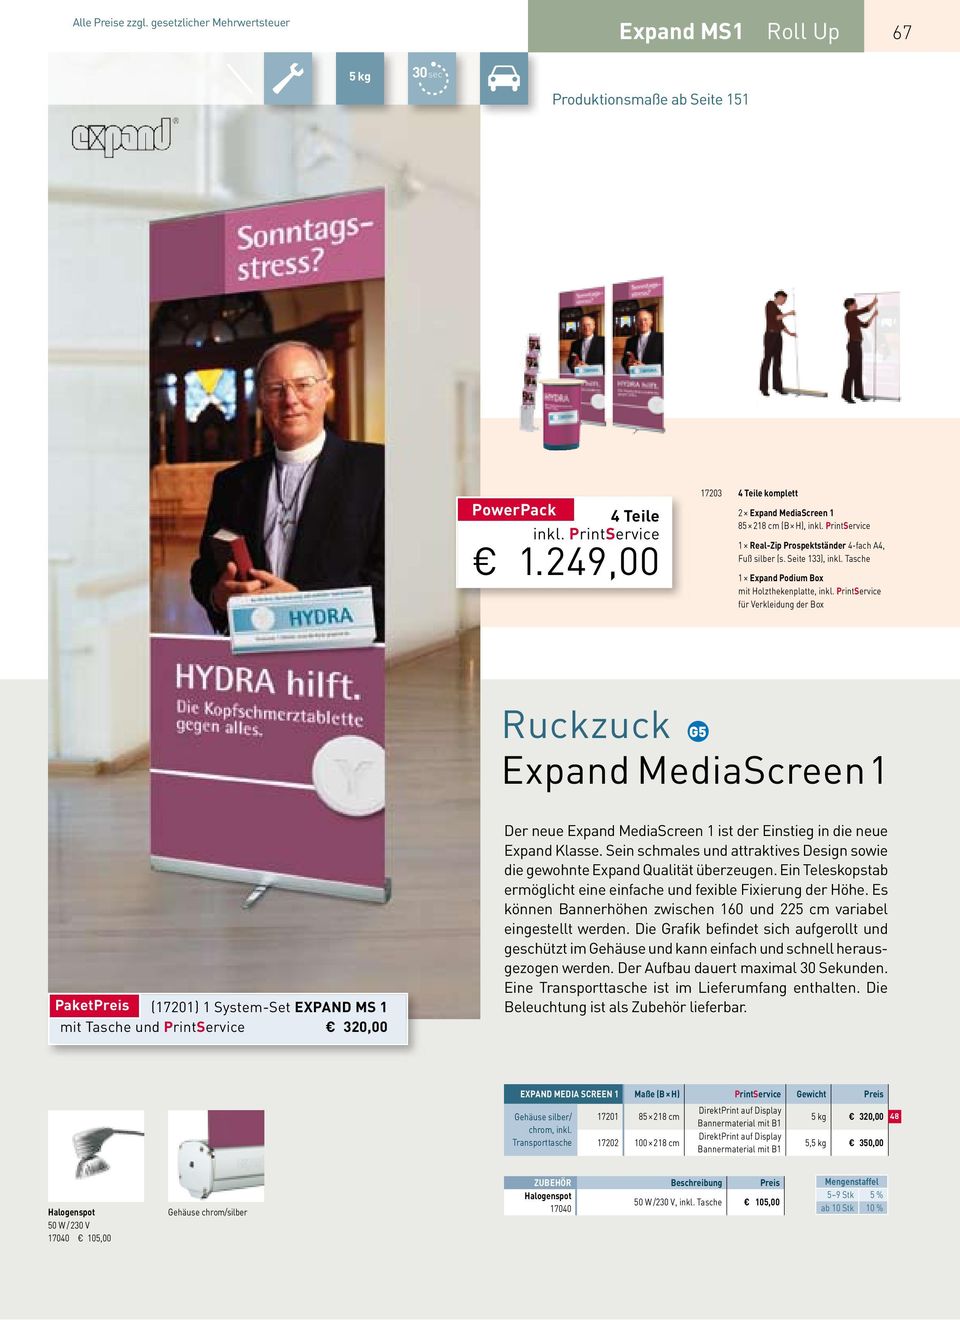 für Verkleidung der Box Ruckzuck Expand MediaScreen 1 PaketPreis (17201) 1 System-Set expand ms 1 mit Tasche und 320,00 Der neue Expand MediaScreen 1 ist der Einstieg in die neue Expand Klasse.